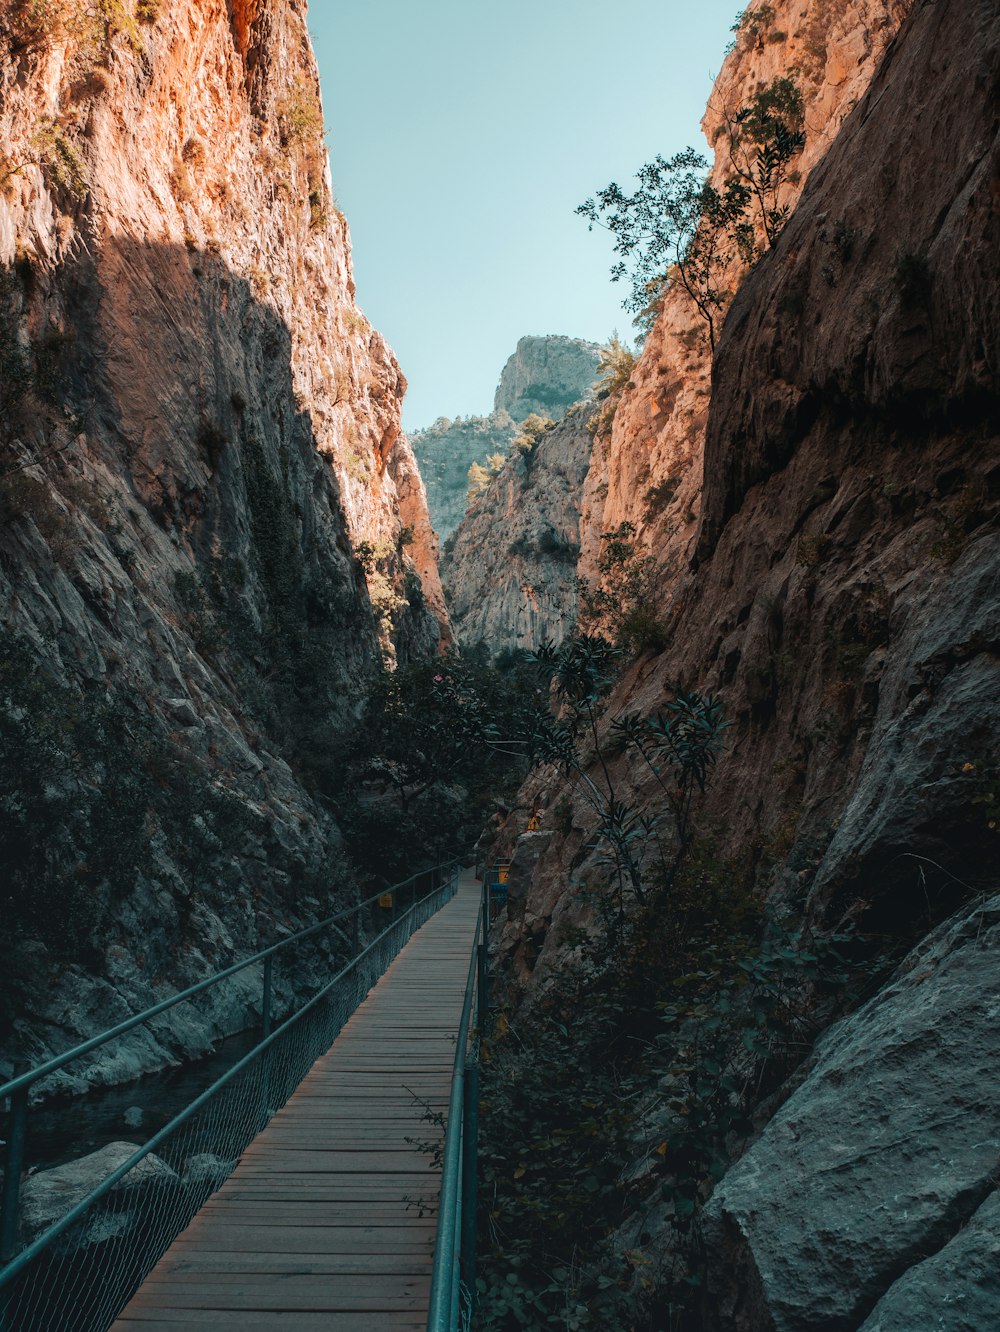 a bridge going through a canyon